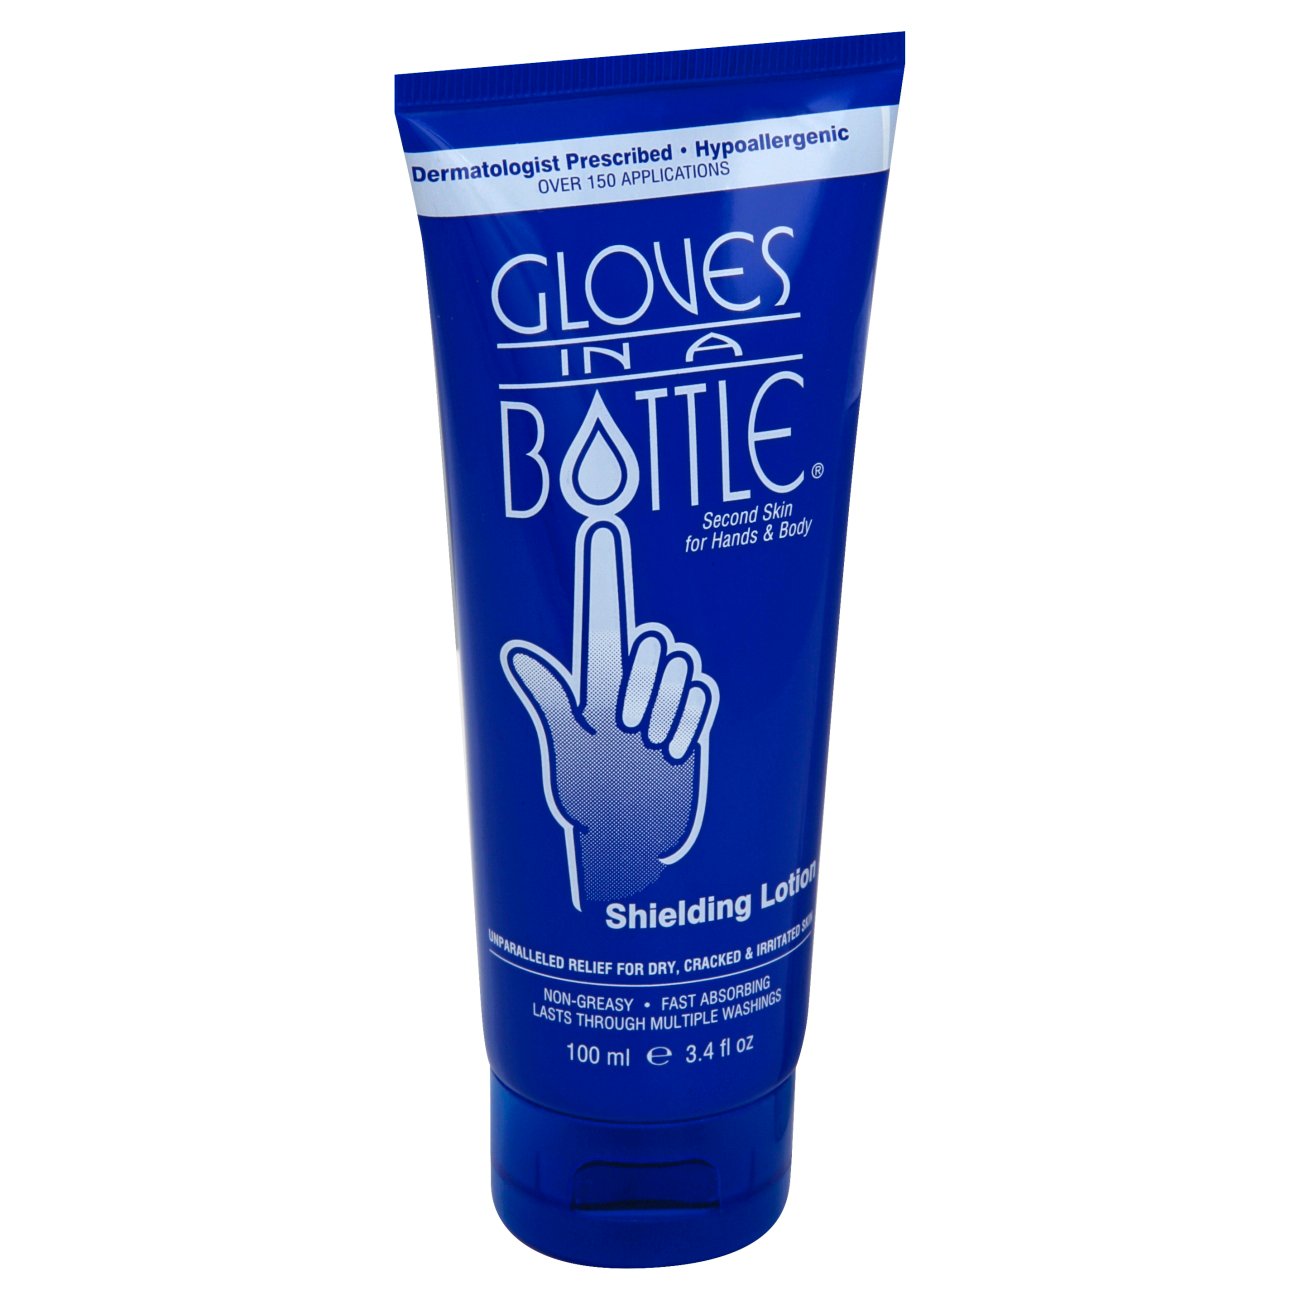 Gloves in a Bottle Shielding Lotion Body Lotion 2.4 oz, 2 fl oz - Kroger